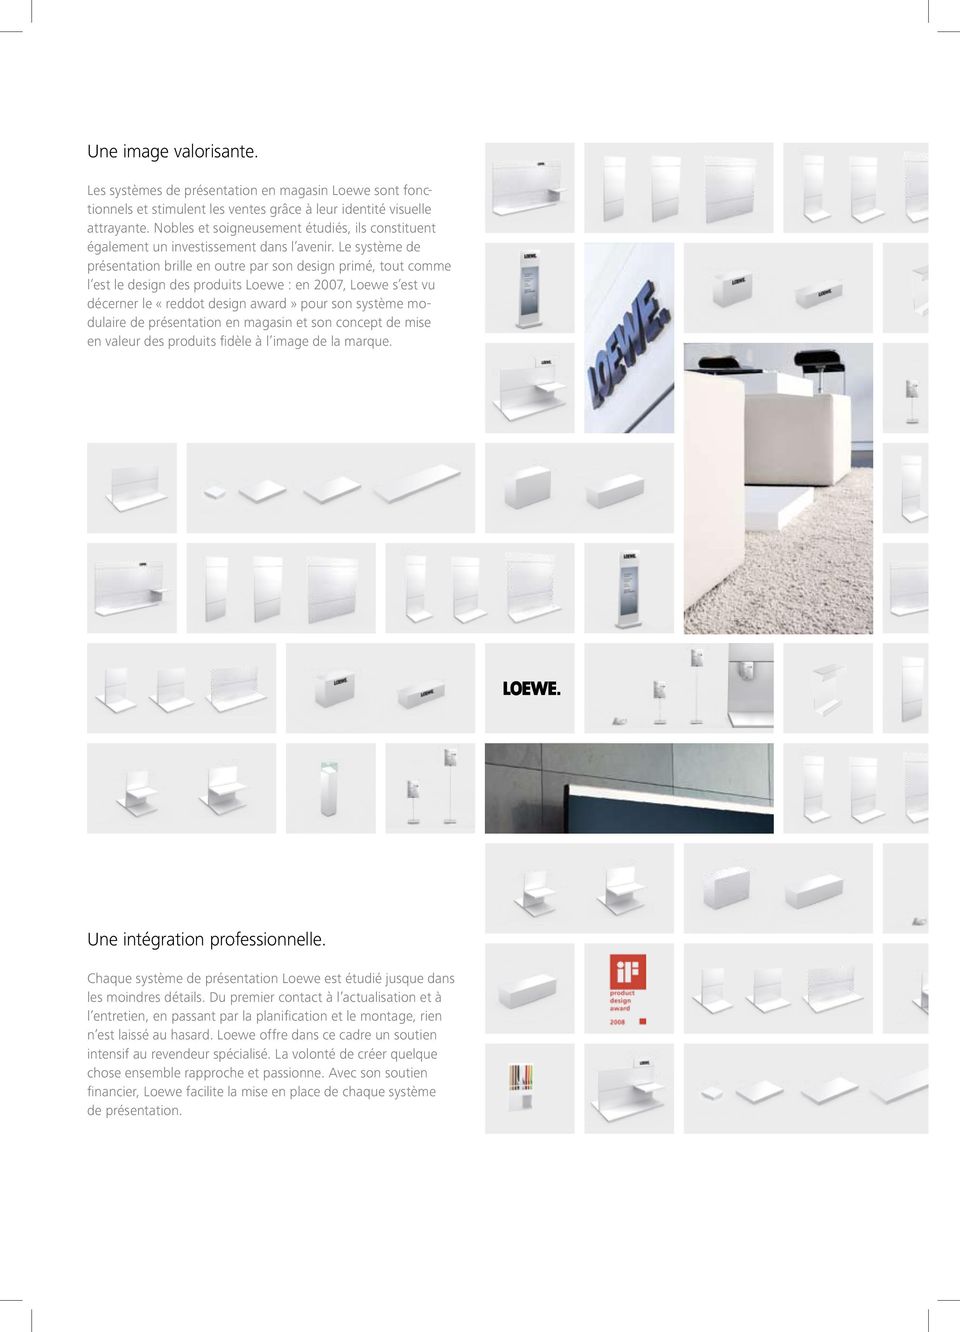 Le système de présentation brille en outre par son design primé, tout comme l est le design des produits Loewe : en 2007, Loewe s est vu décerner le «reddot design award» pour son système modulaire